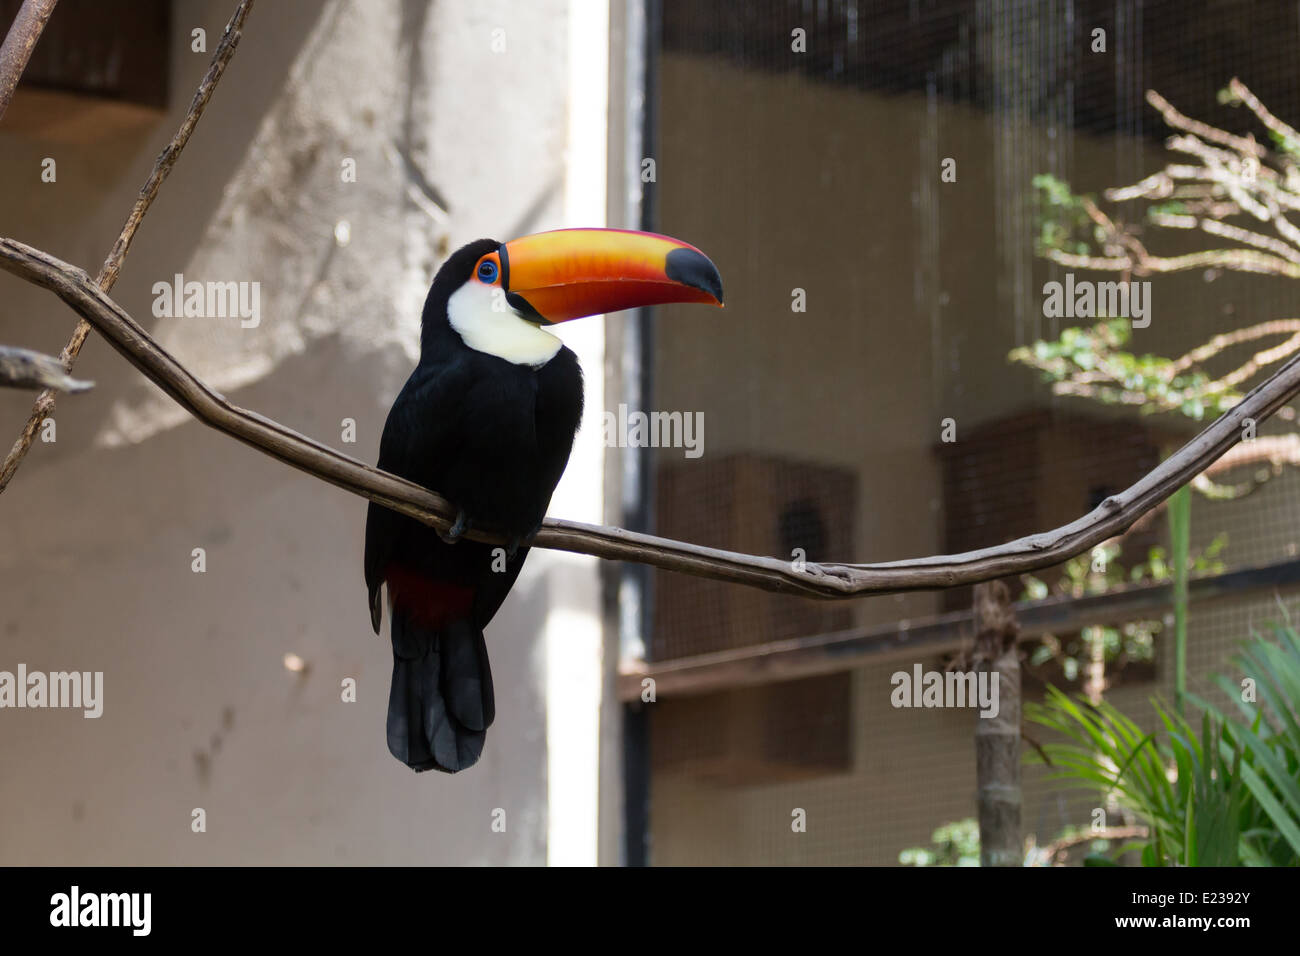 Toco Toucan avec leurs énormes typique facture Orange, anneau bleu sur ses yeux et son plumage noir. Zoo d'Itatiba, Sao Paulo, Brésil. Banque D'Images